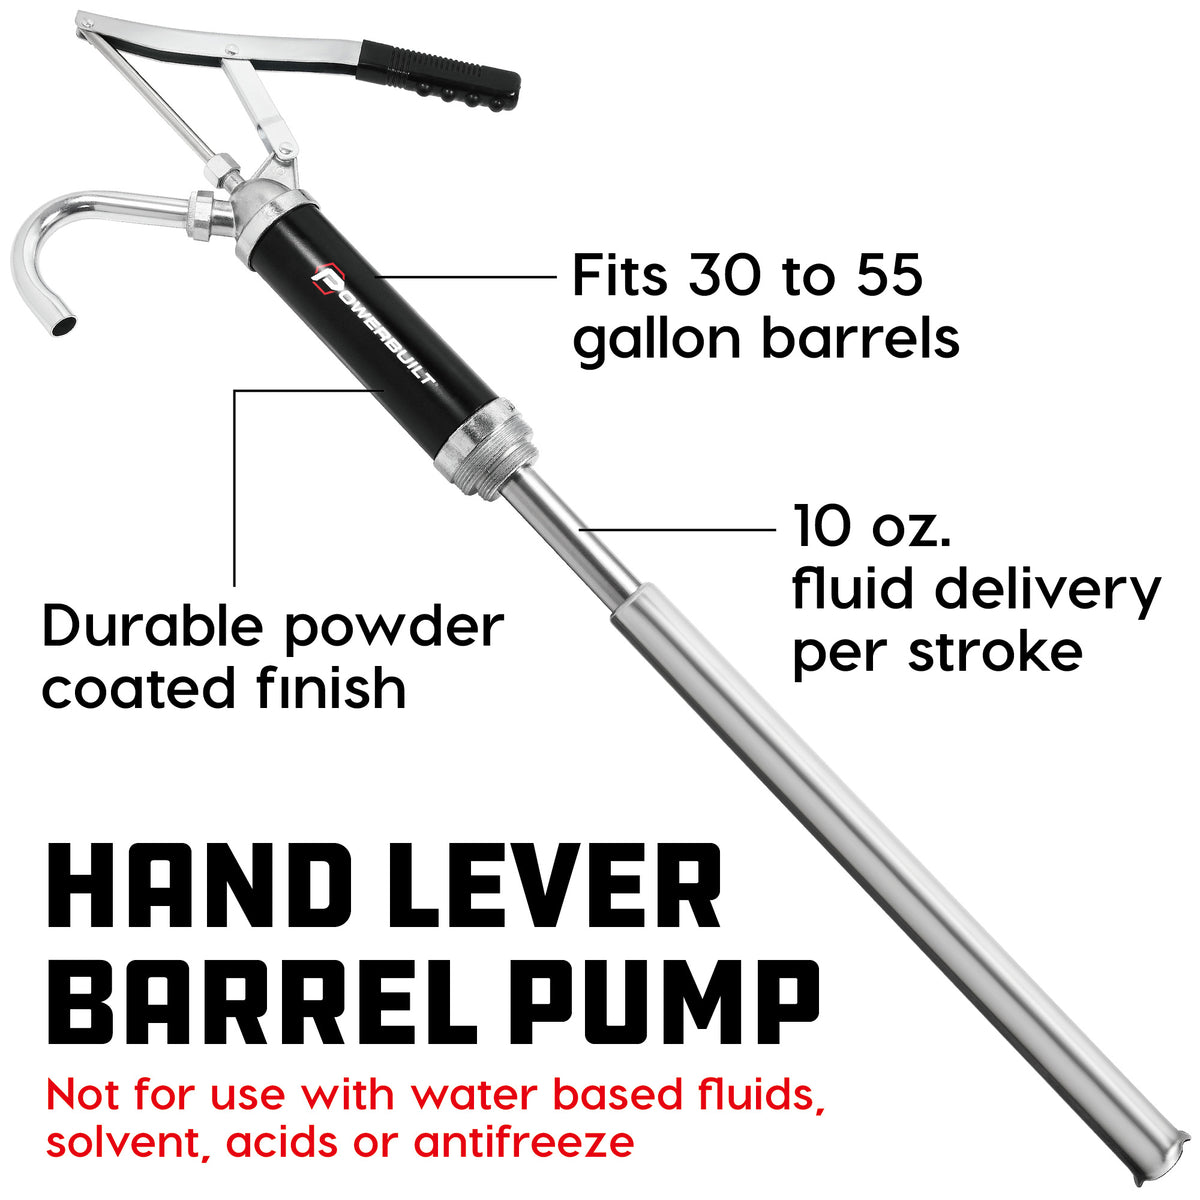 Lever Action Barrel Pump